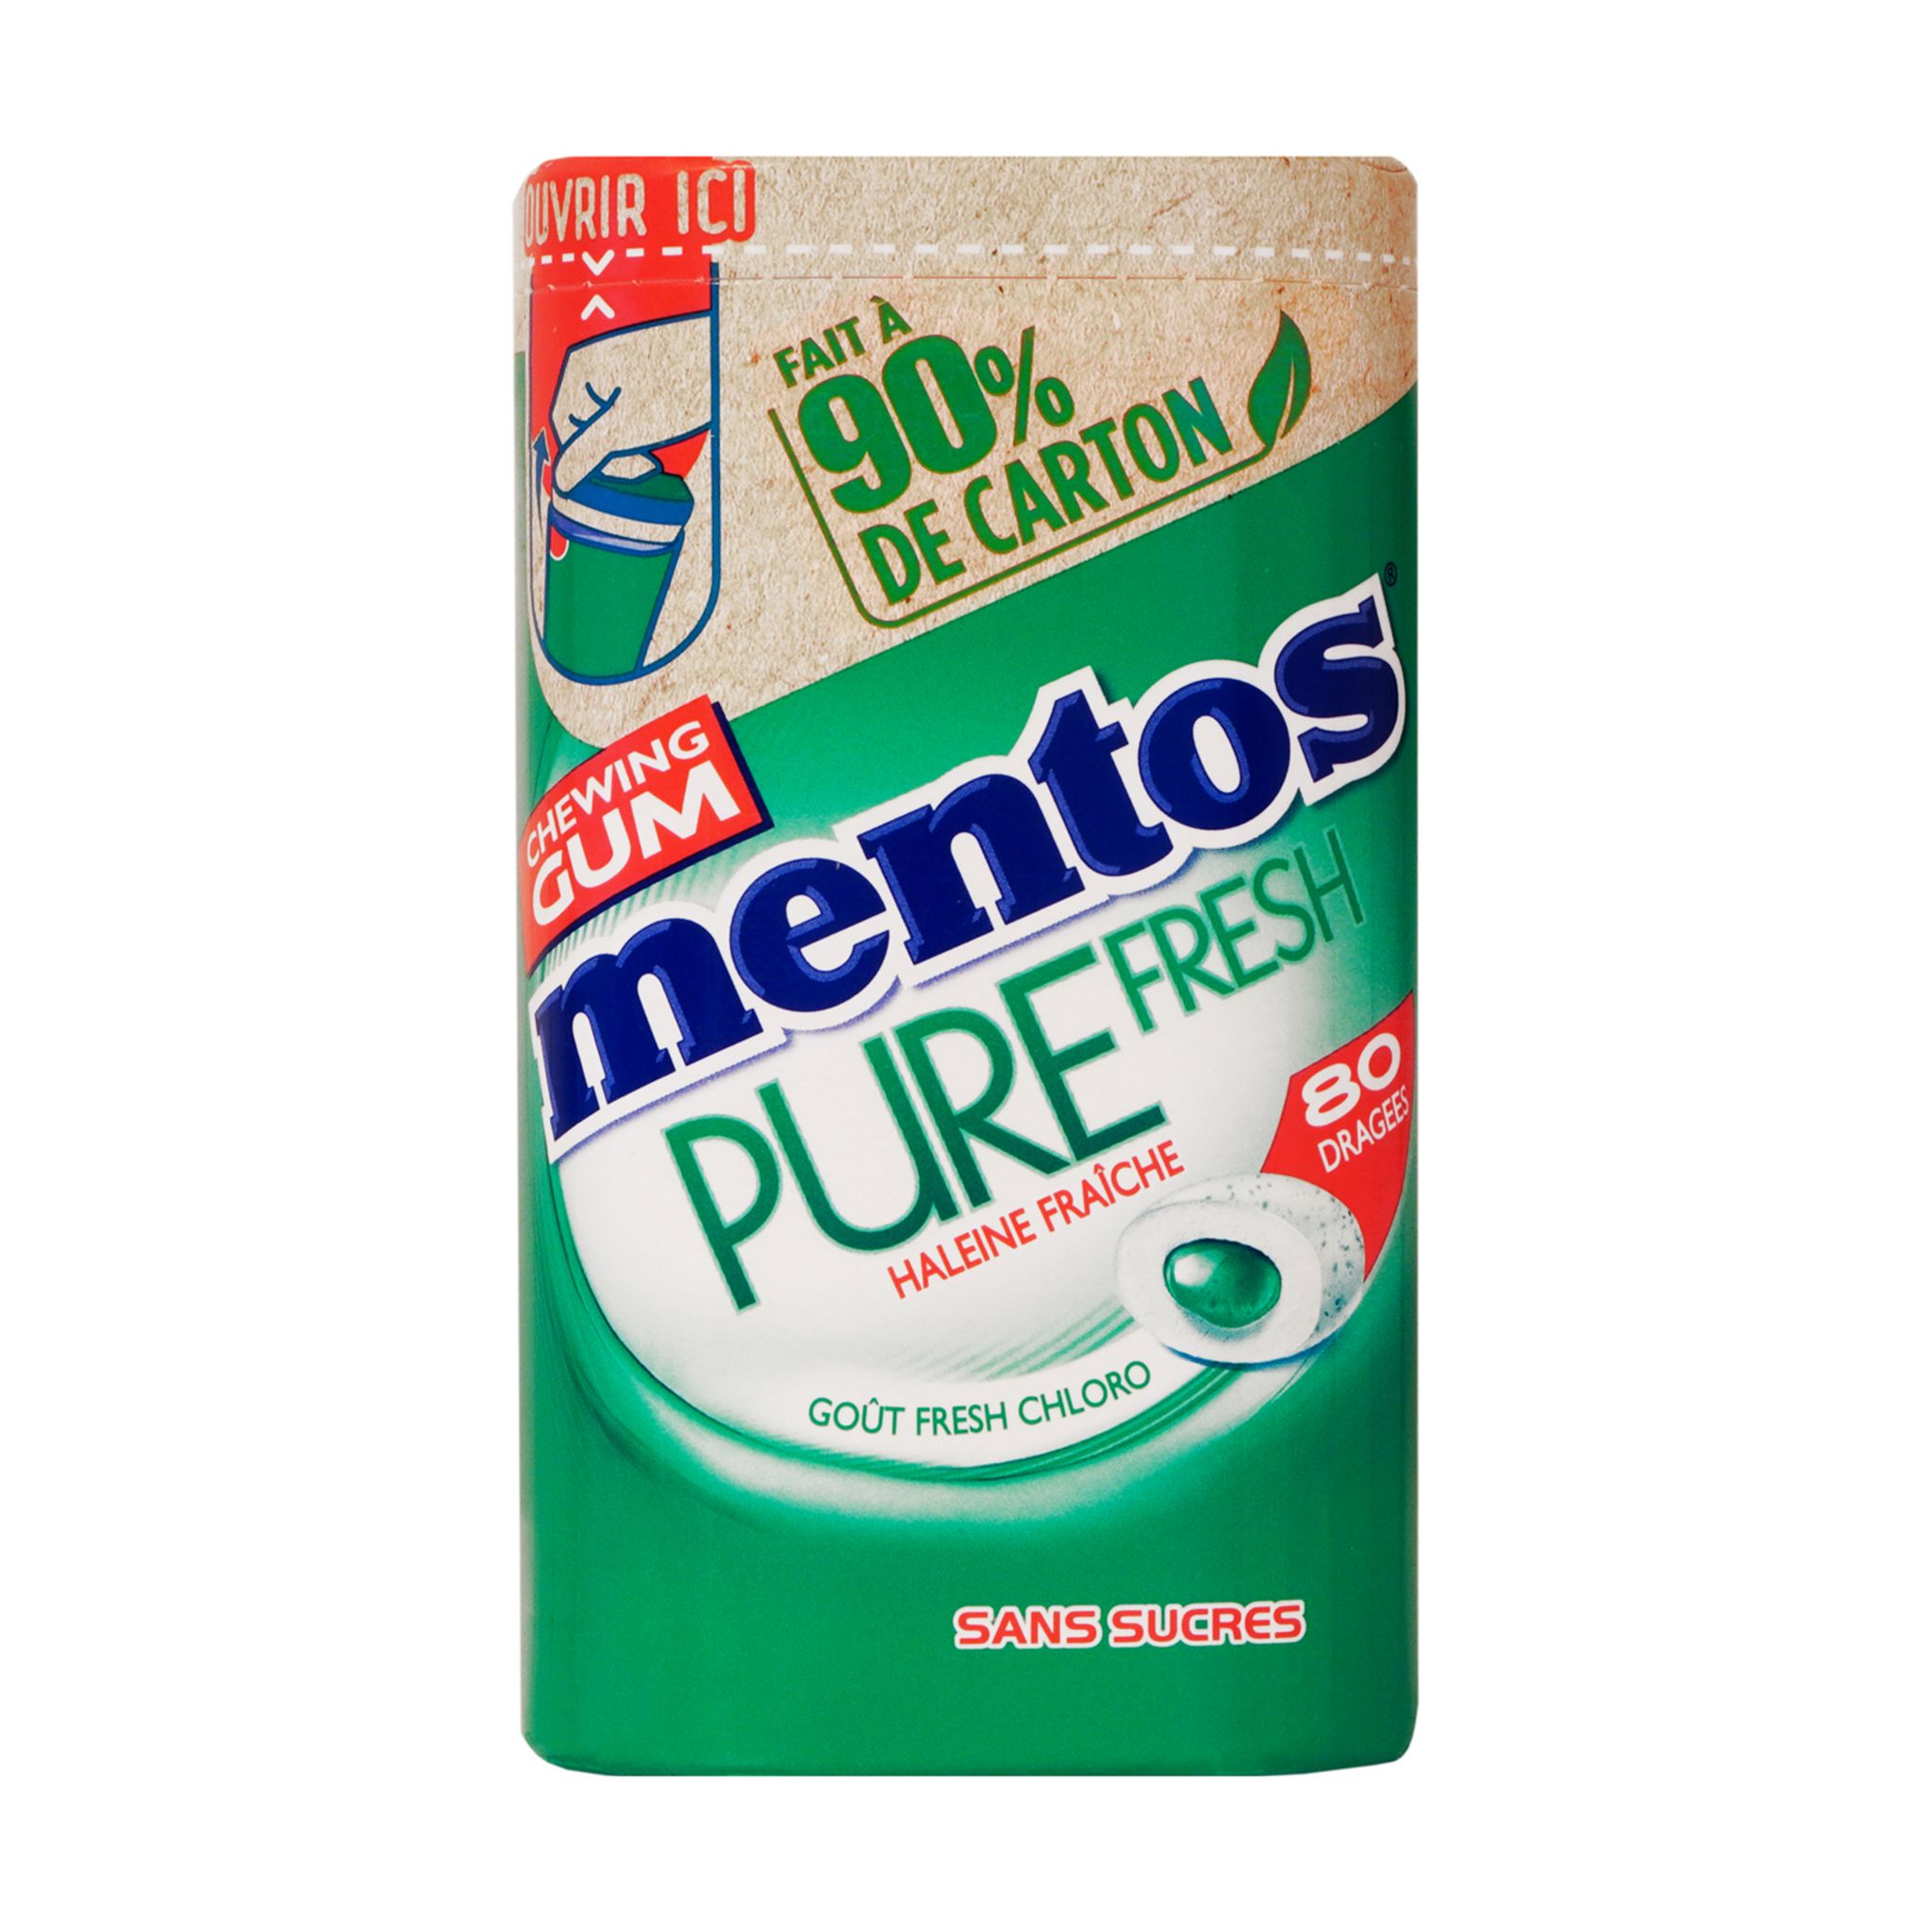 MENTOS Chewing gum pure fresh sans sucres 80 dragées 160g pas cher 